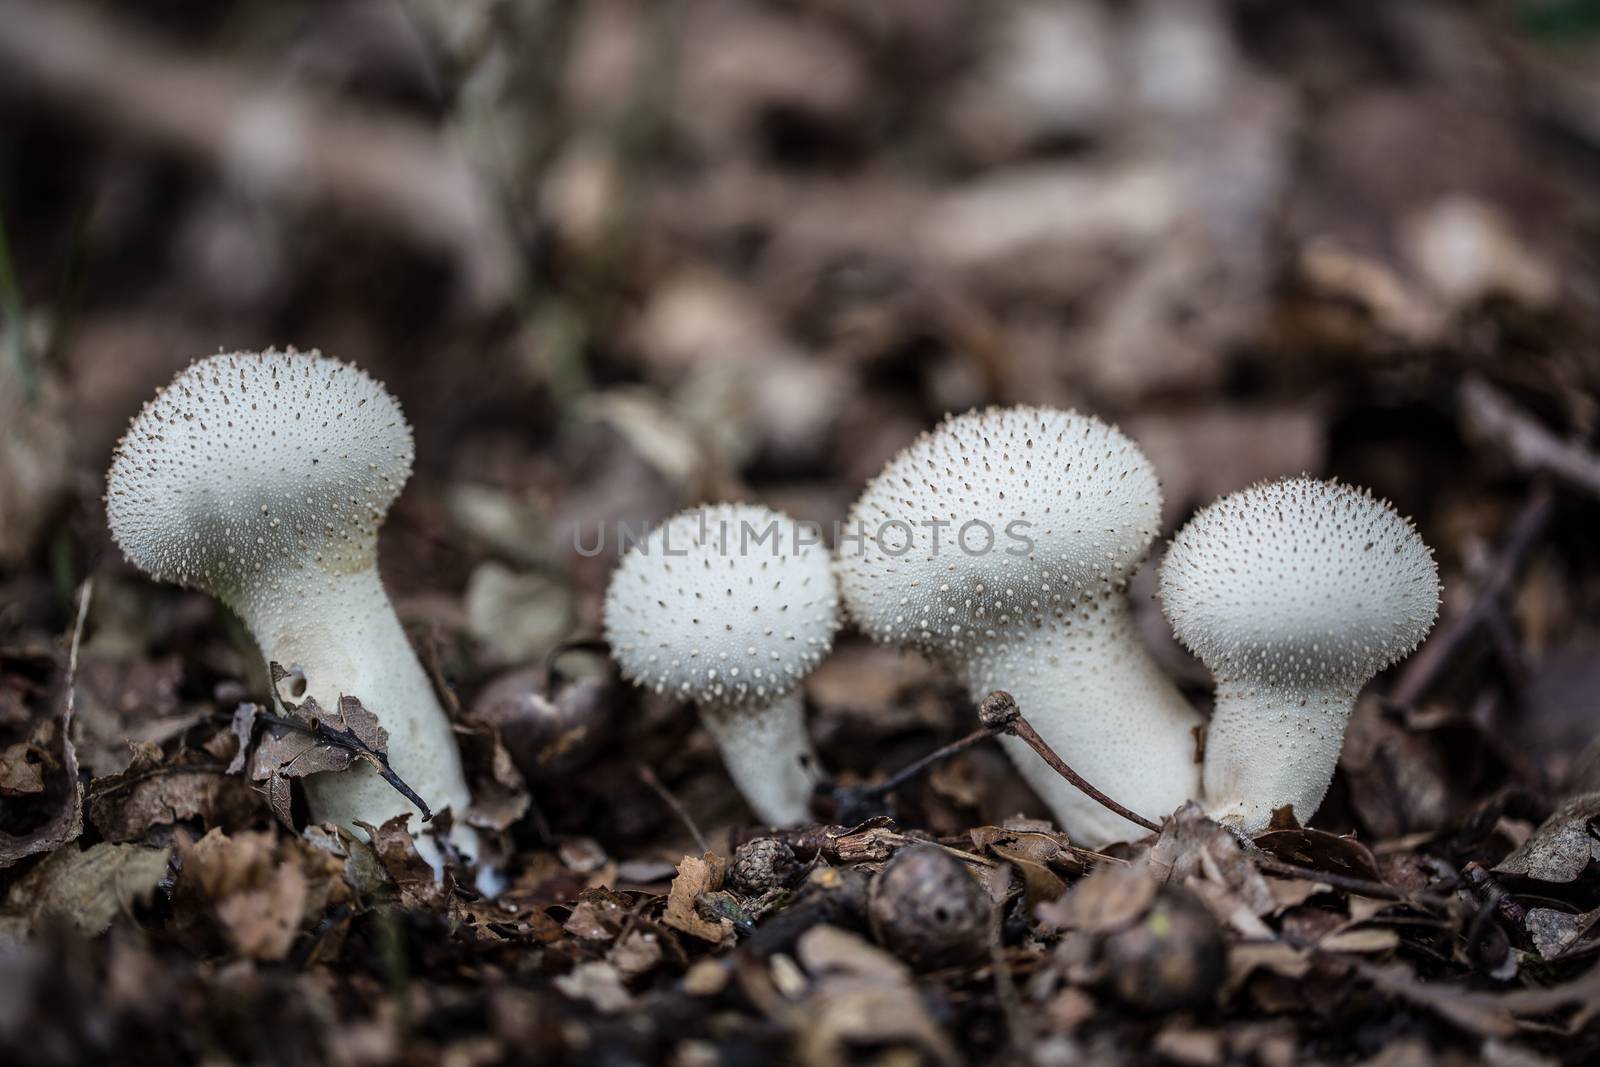 tasty edible mushroom on forest floor